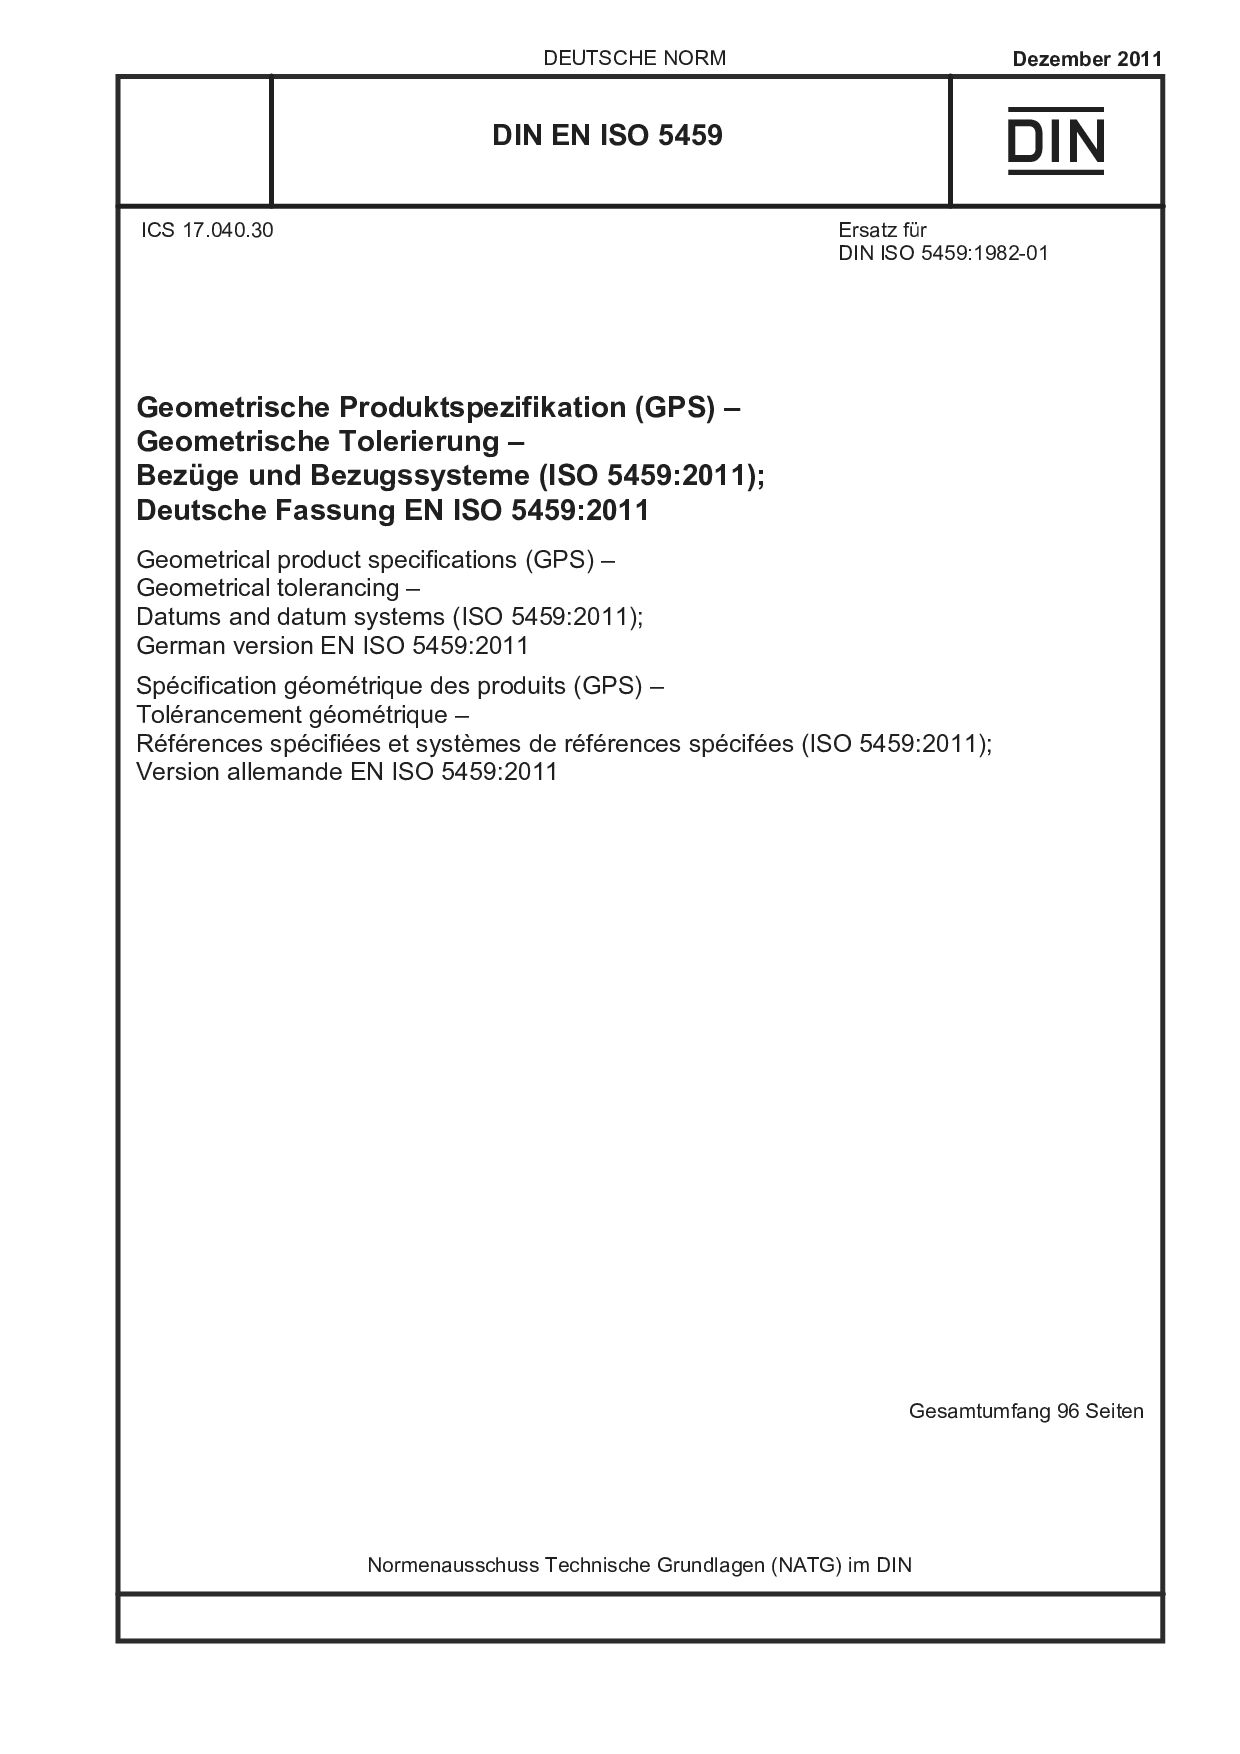 DIN EN ISO 5459:2011封面图